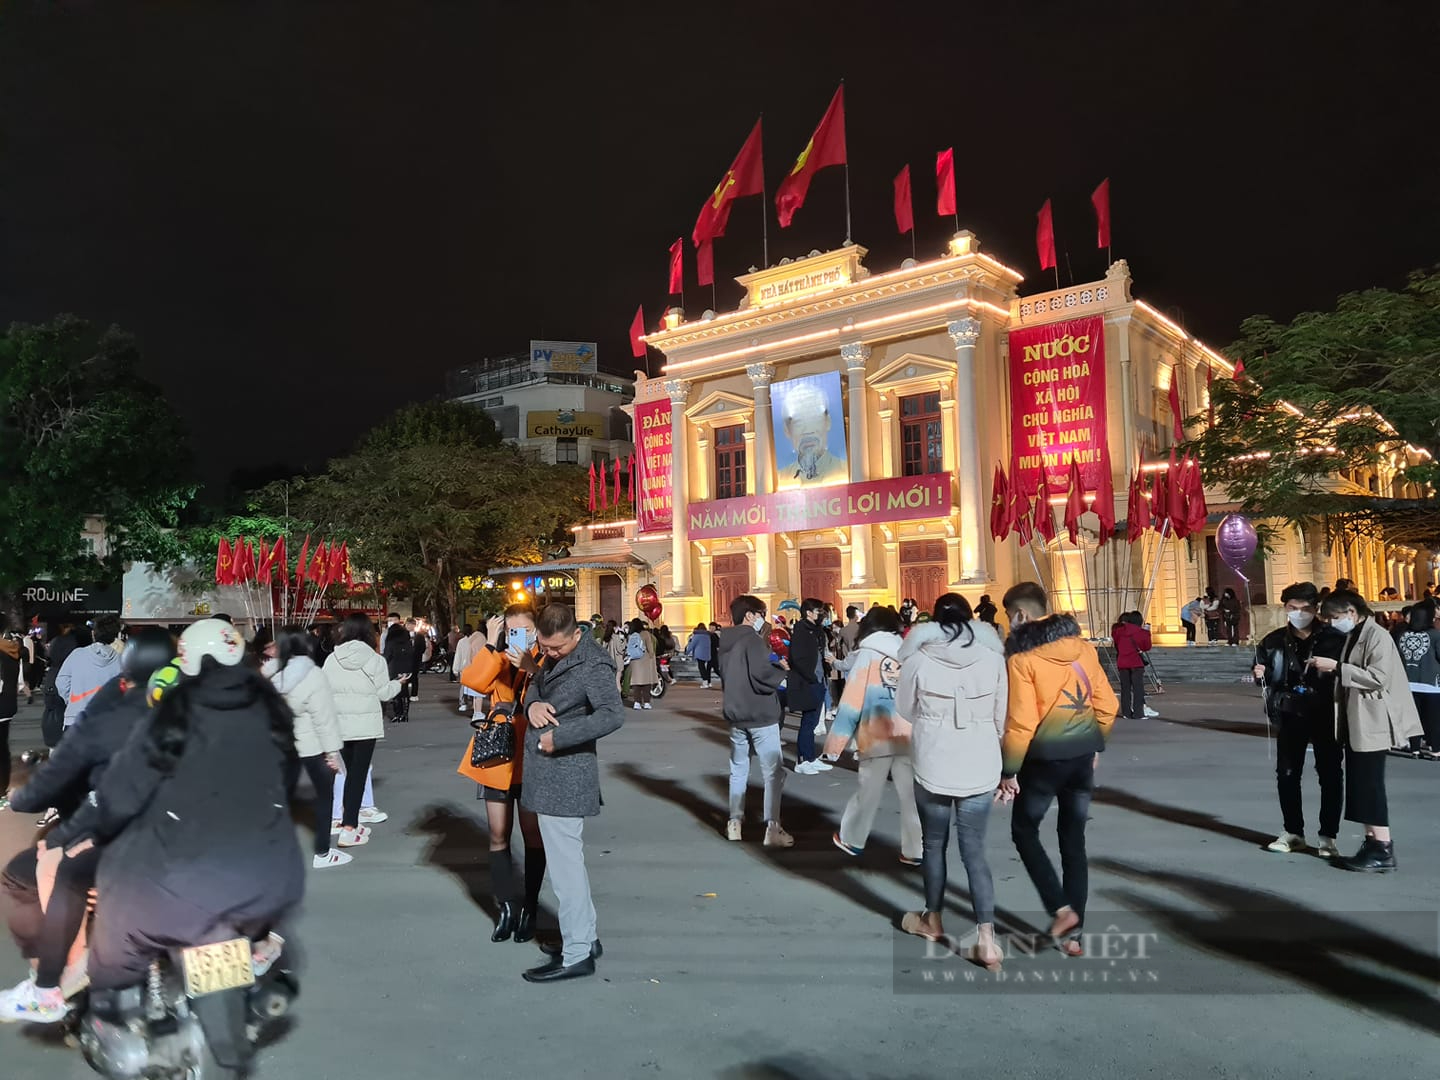 TRỰC TIẾP: Tổng Bí thư Nguyễn Phú Trọng tới chúc Tết Thành ủy Hà Nội trước thời khắc giao thừa - Ảnh 4.